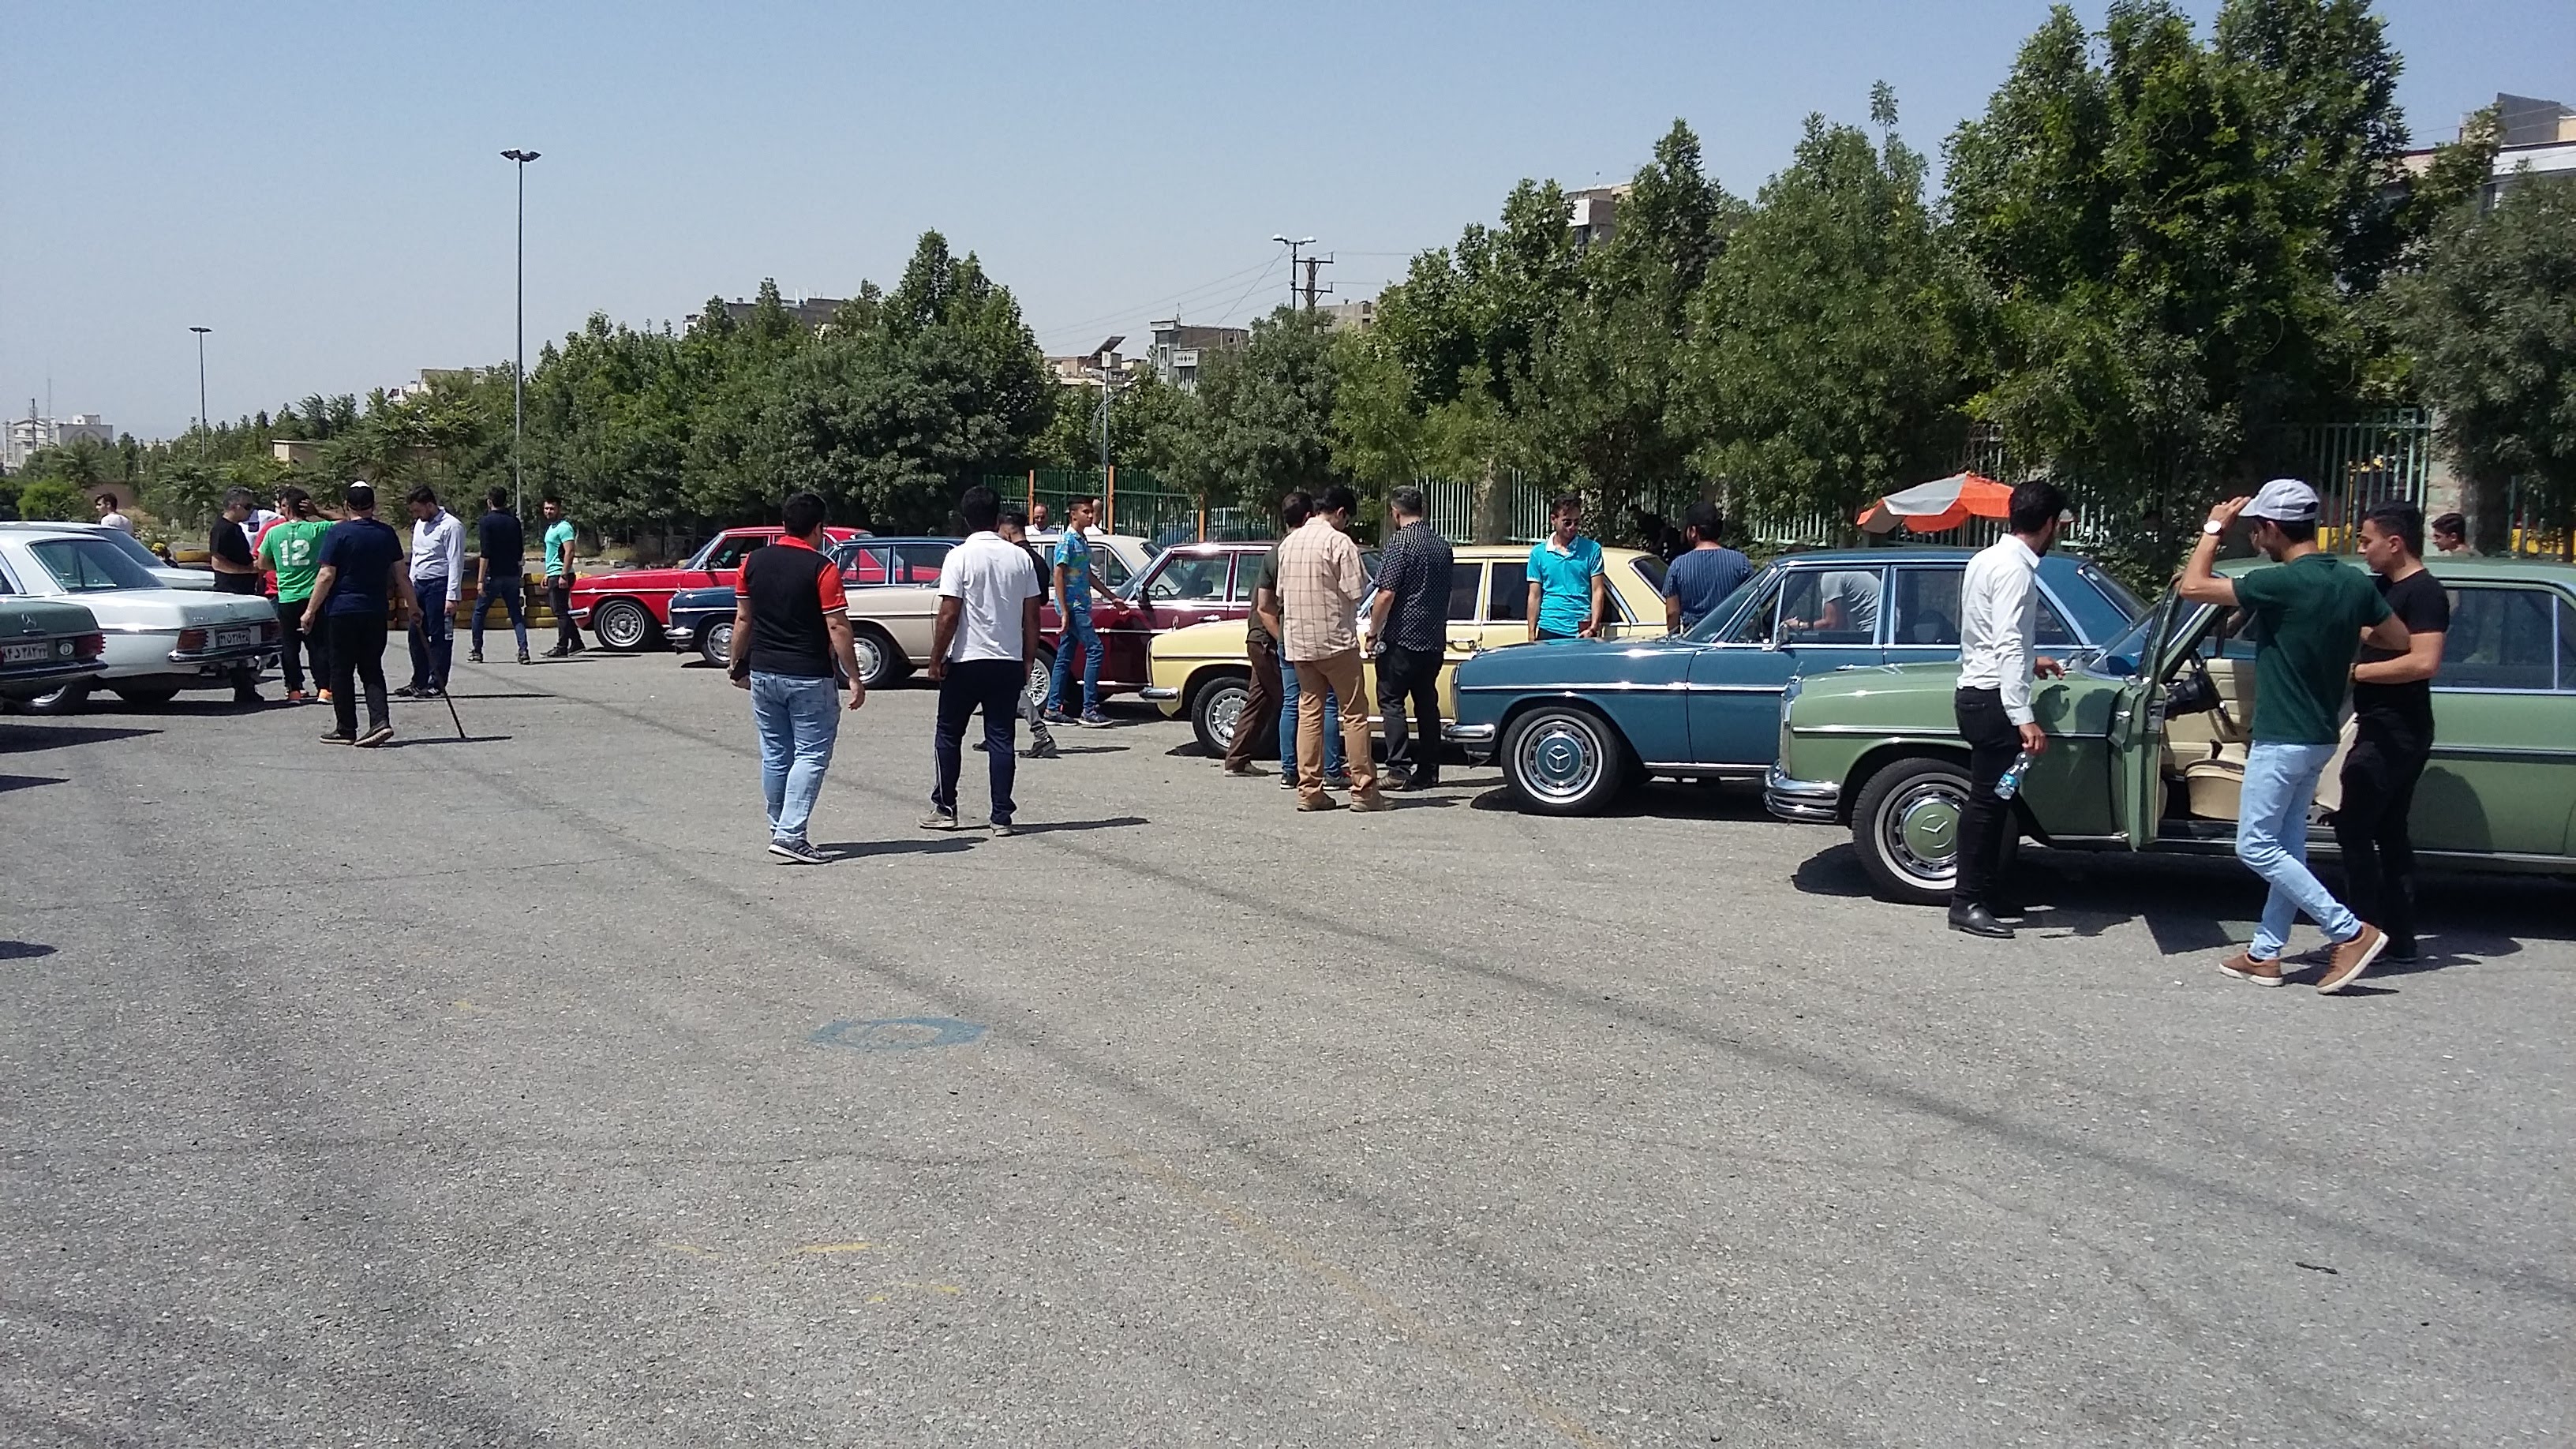 همایش خودروهای کلاسیک البرز